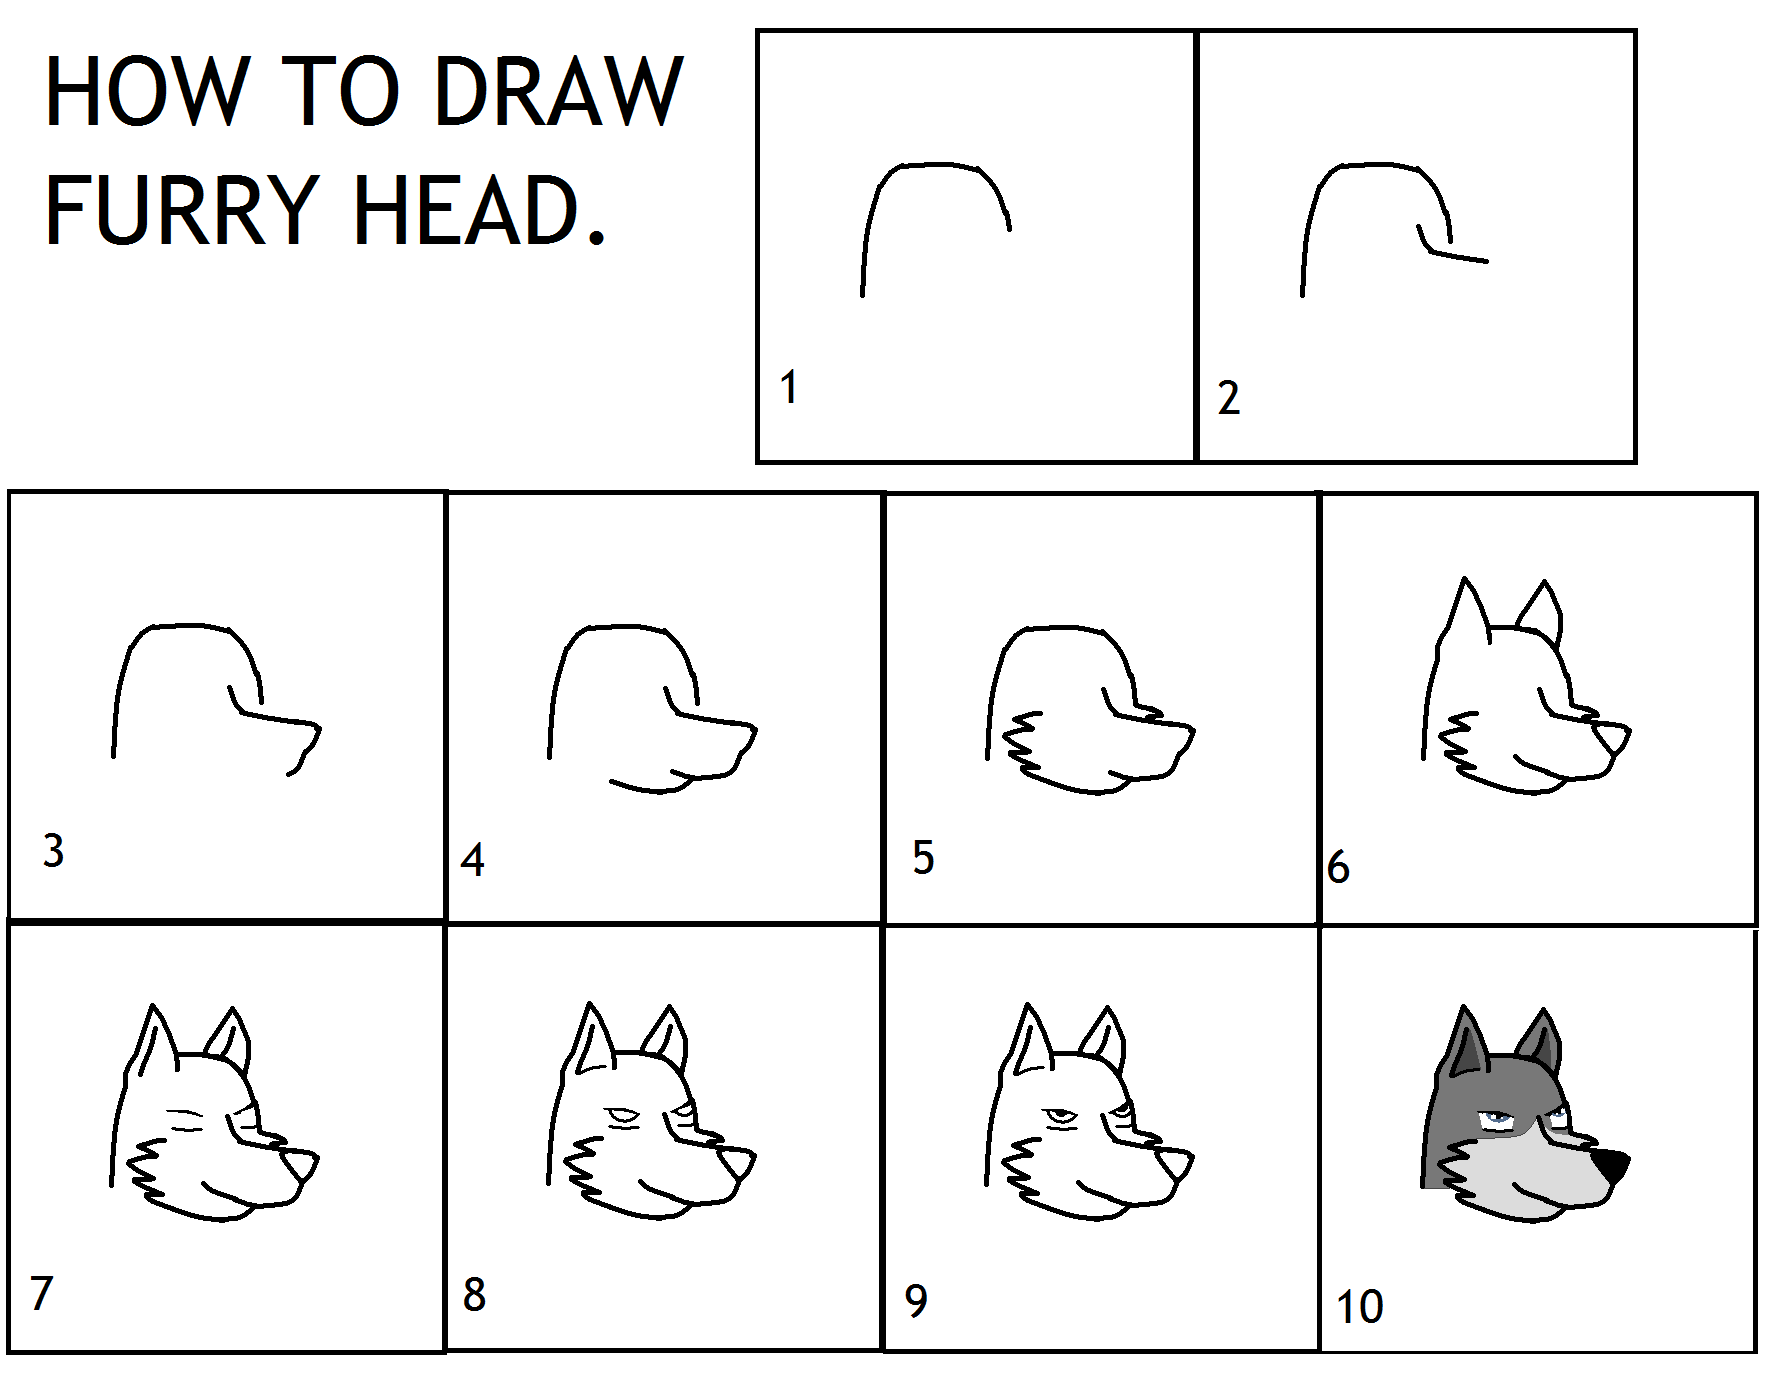 How To Draw Furry Head By Zergrex On Deviantart